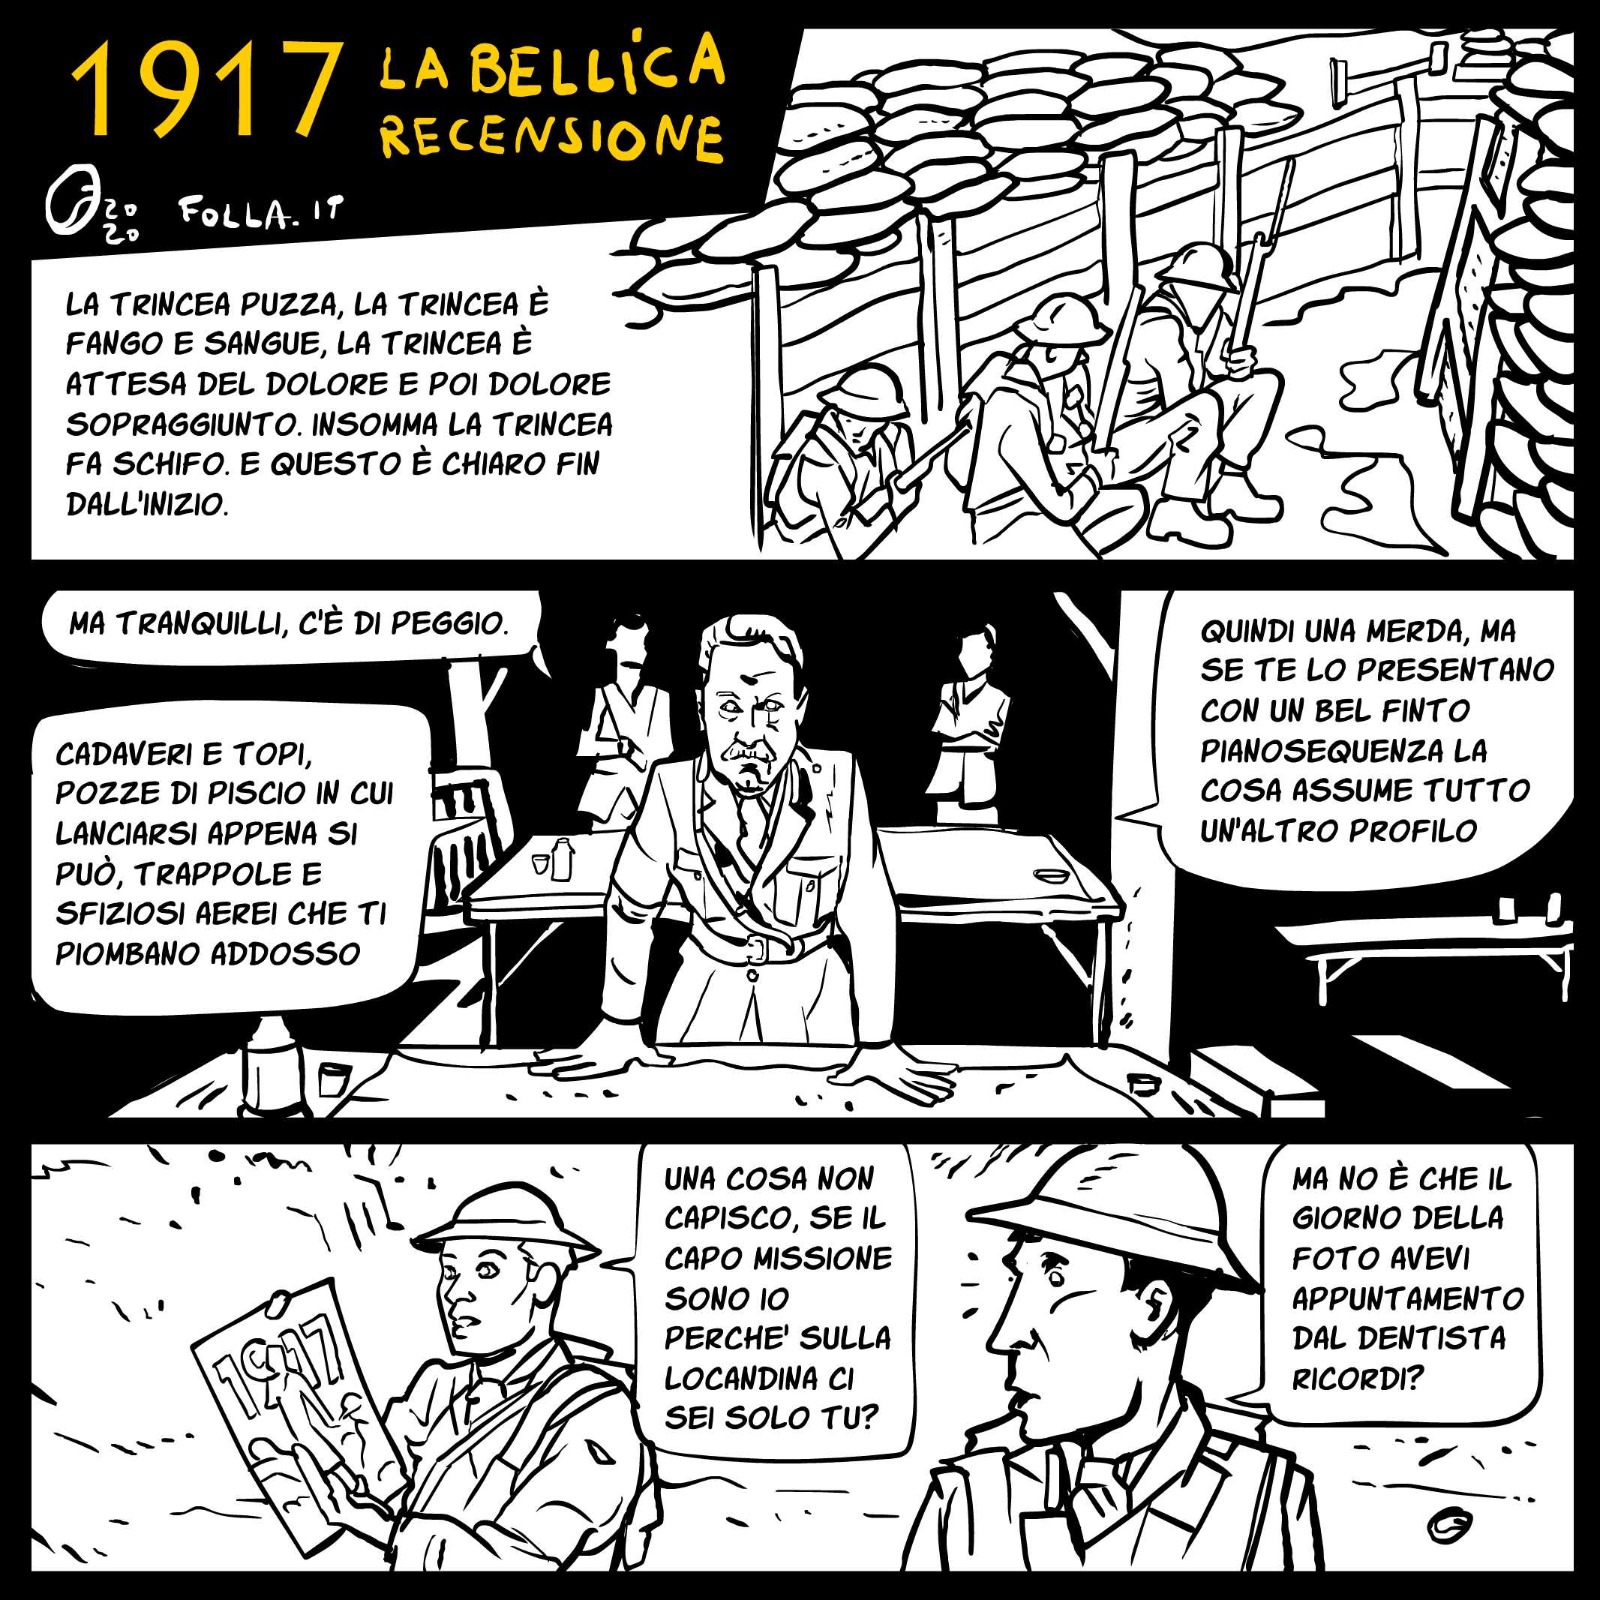 Striscia a fumetti in bianco e nero con tre larghe vignette con i protagonisti del film 1917, soldati della Grande Guerra